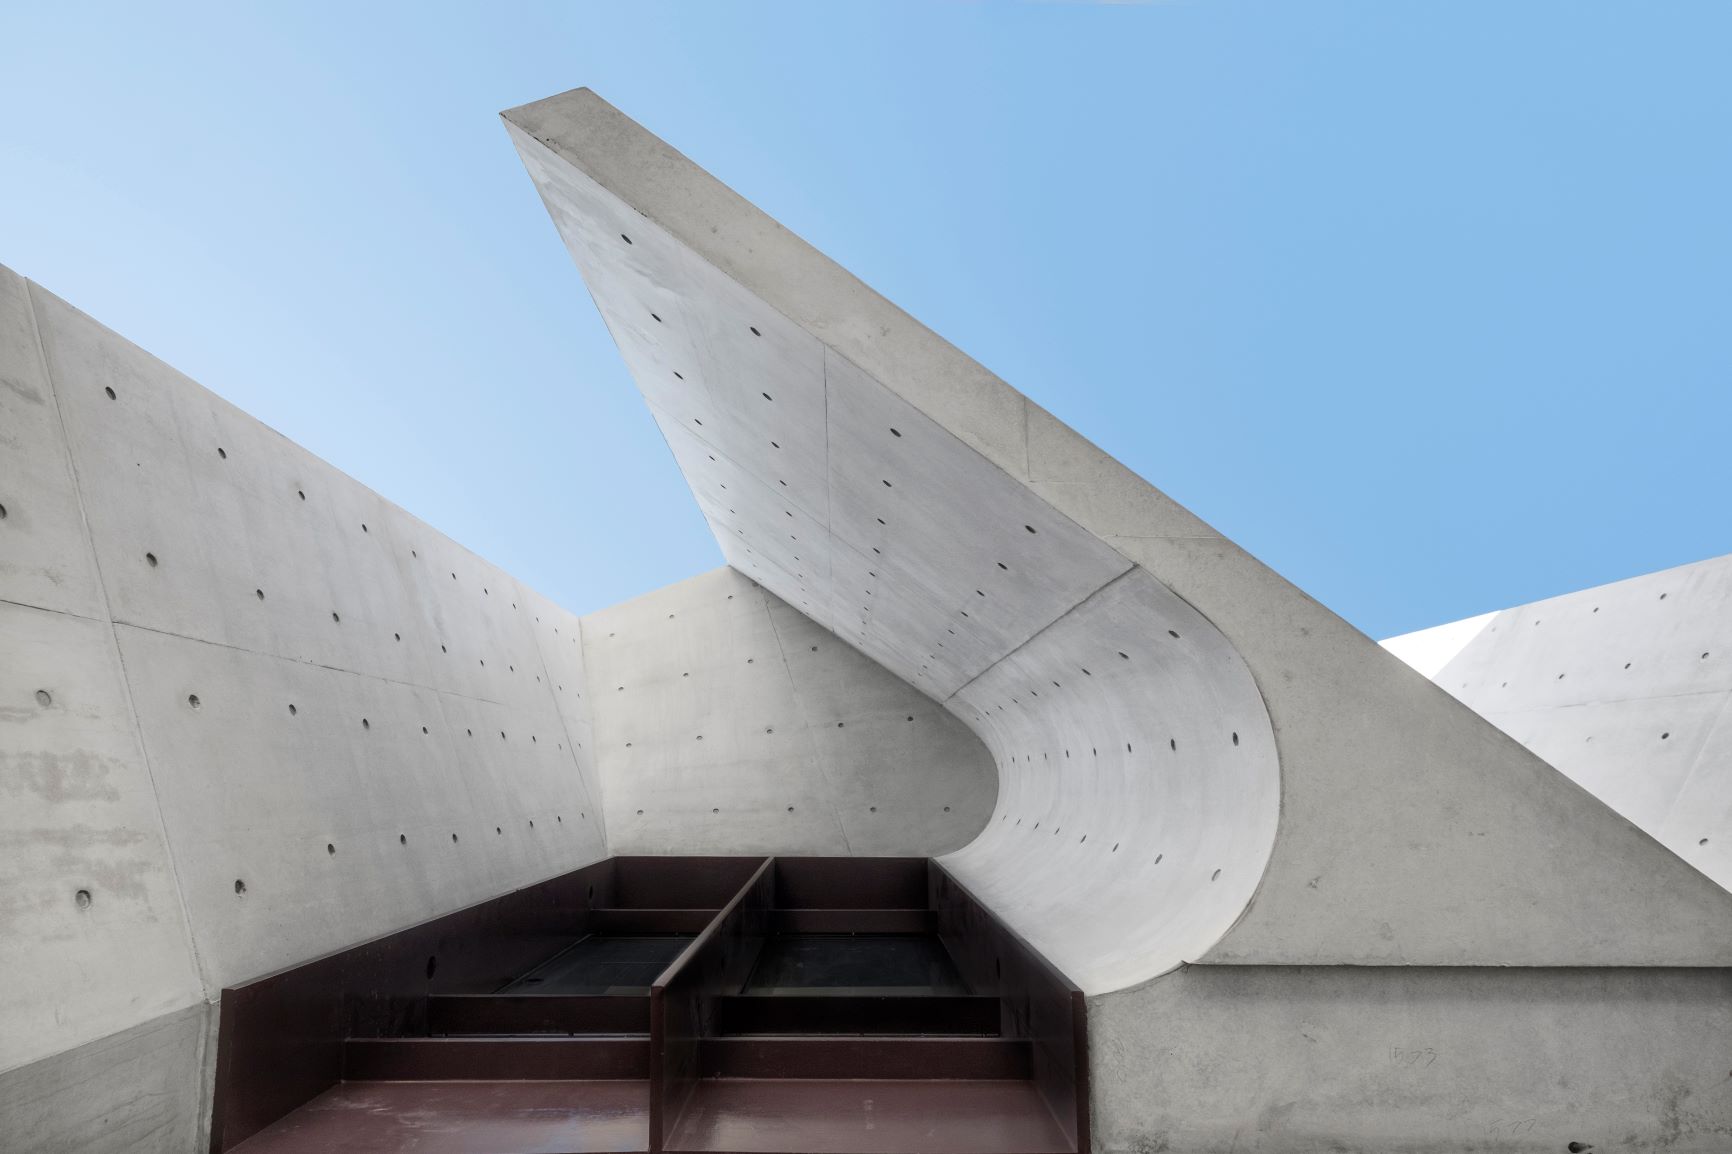 “Concrete: art design architecture” opens at the Australian Design